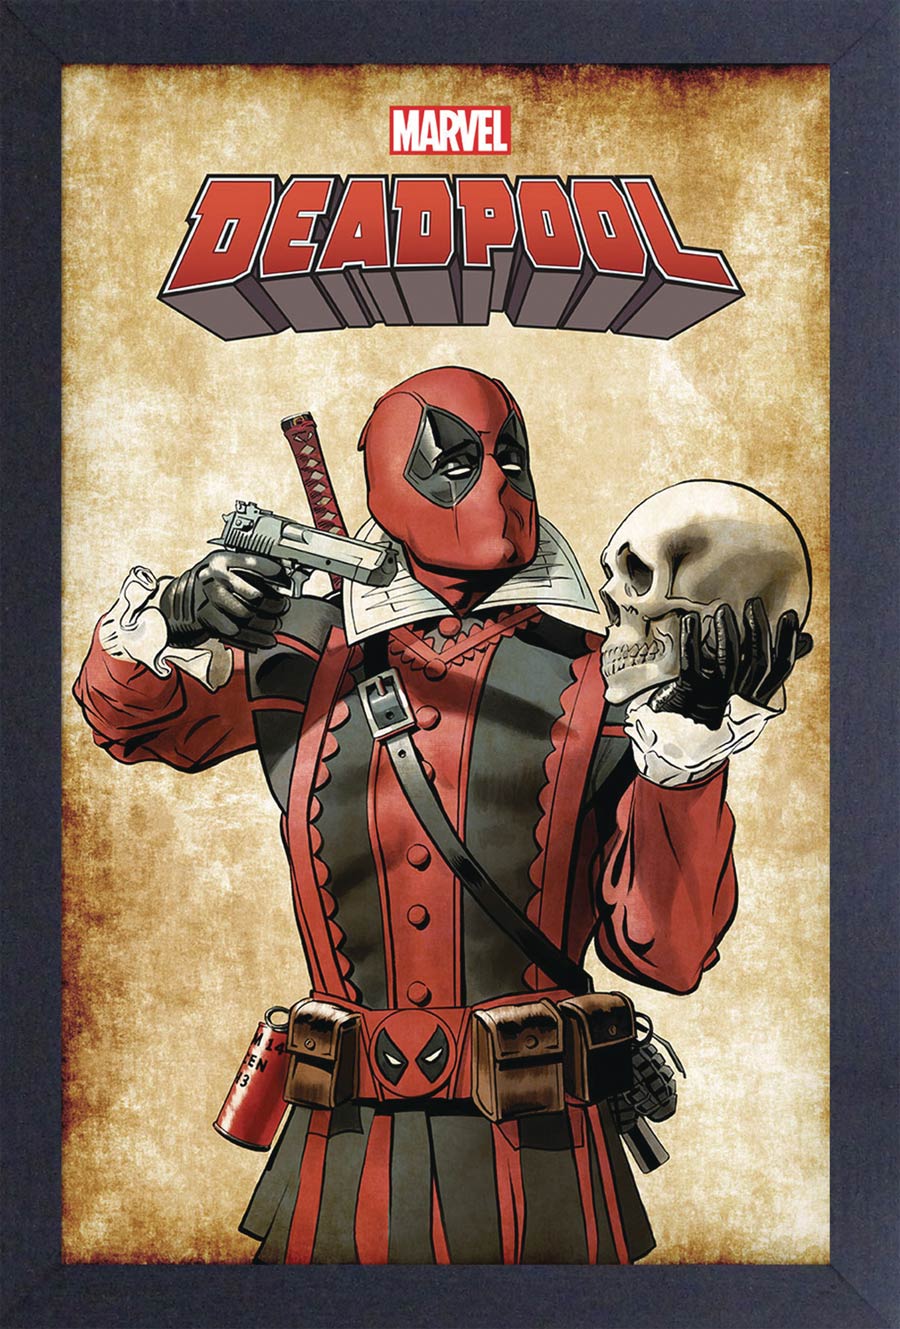 Marvel 11x17 Framed Print - Fancy Deadpool